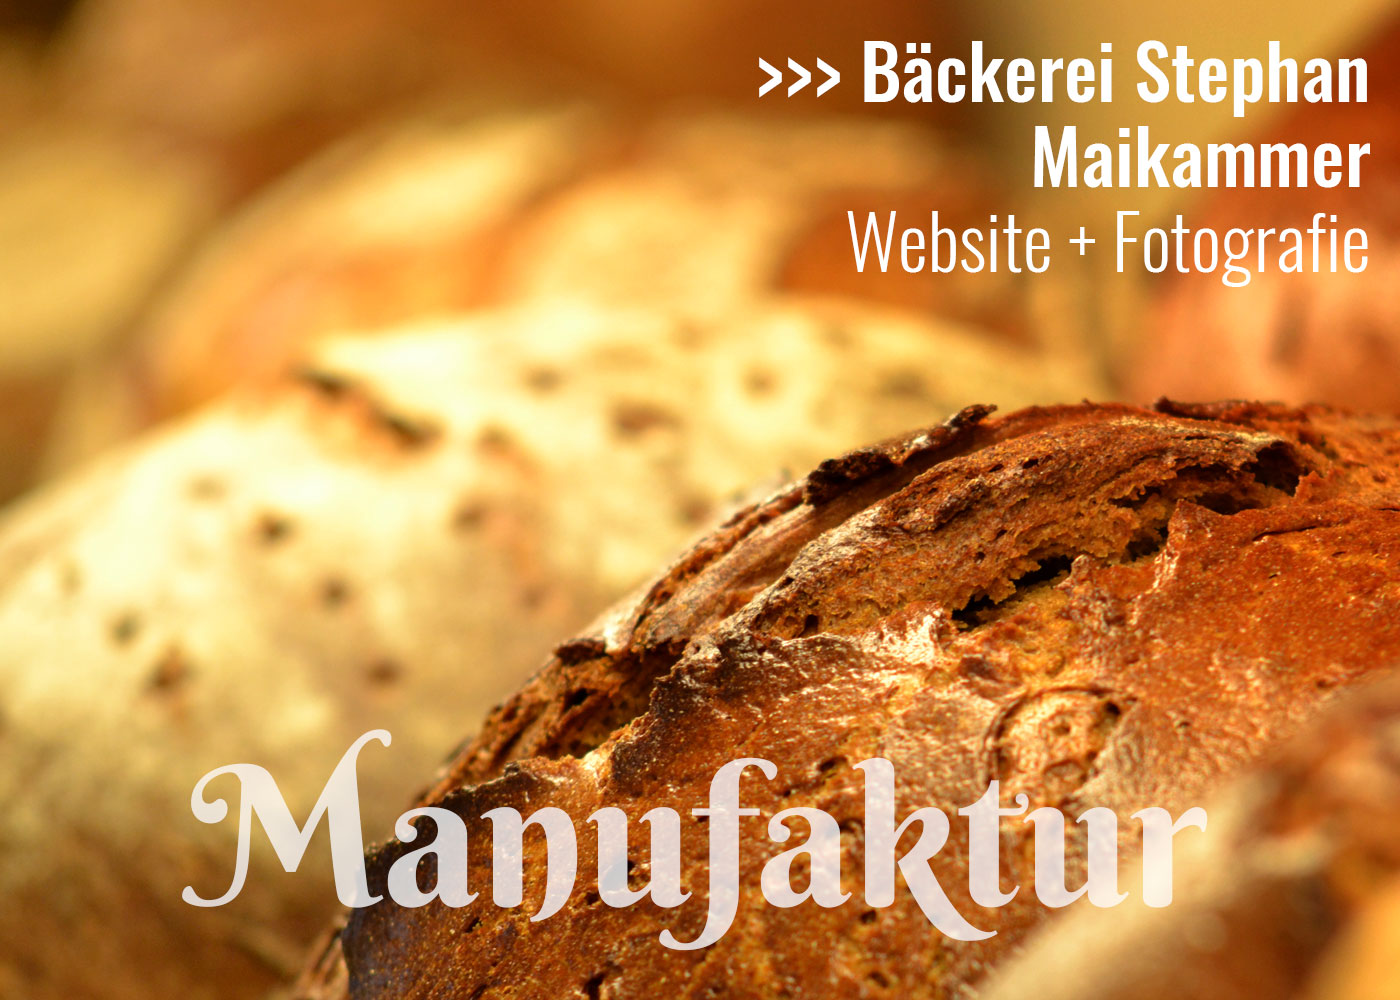 Bäckerei Stephan in Maikammer, Website und Fotografie